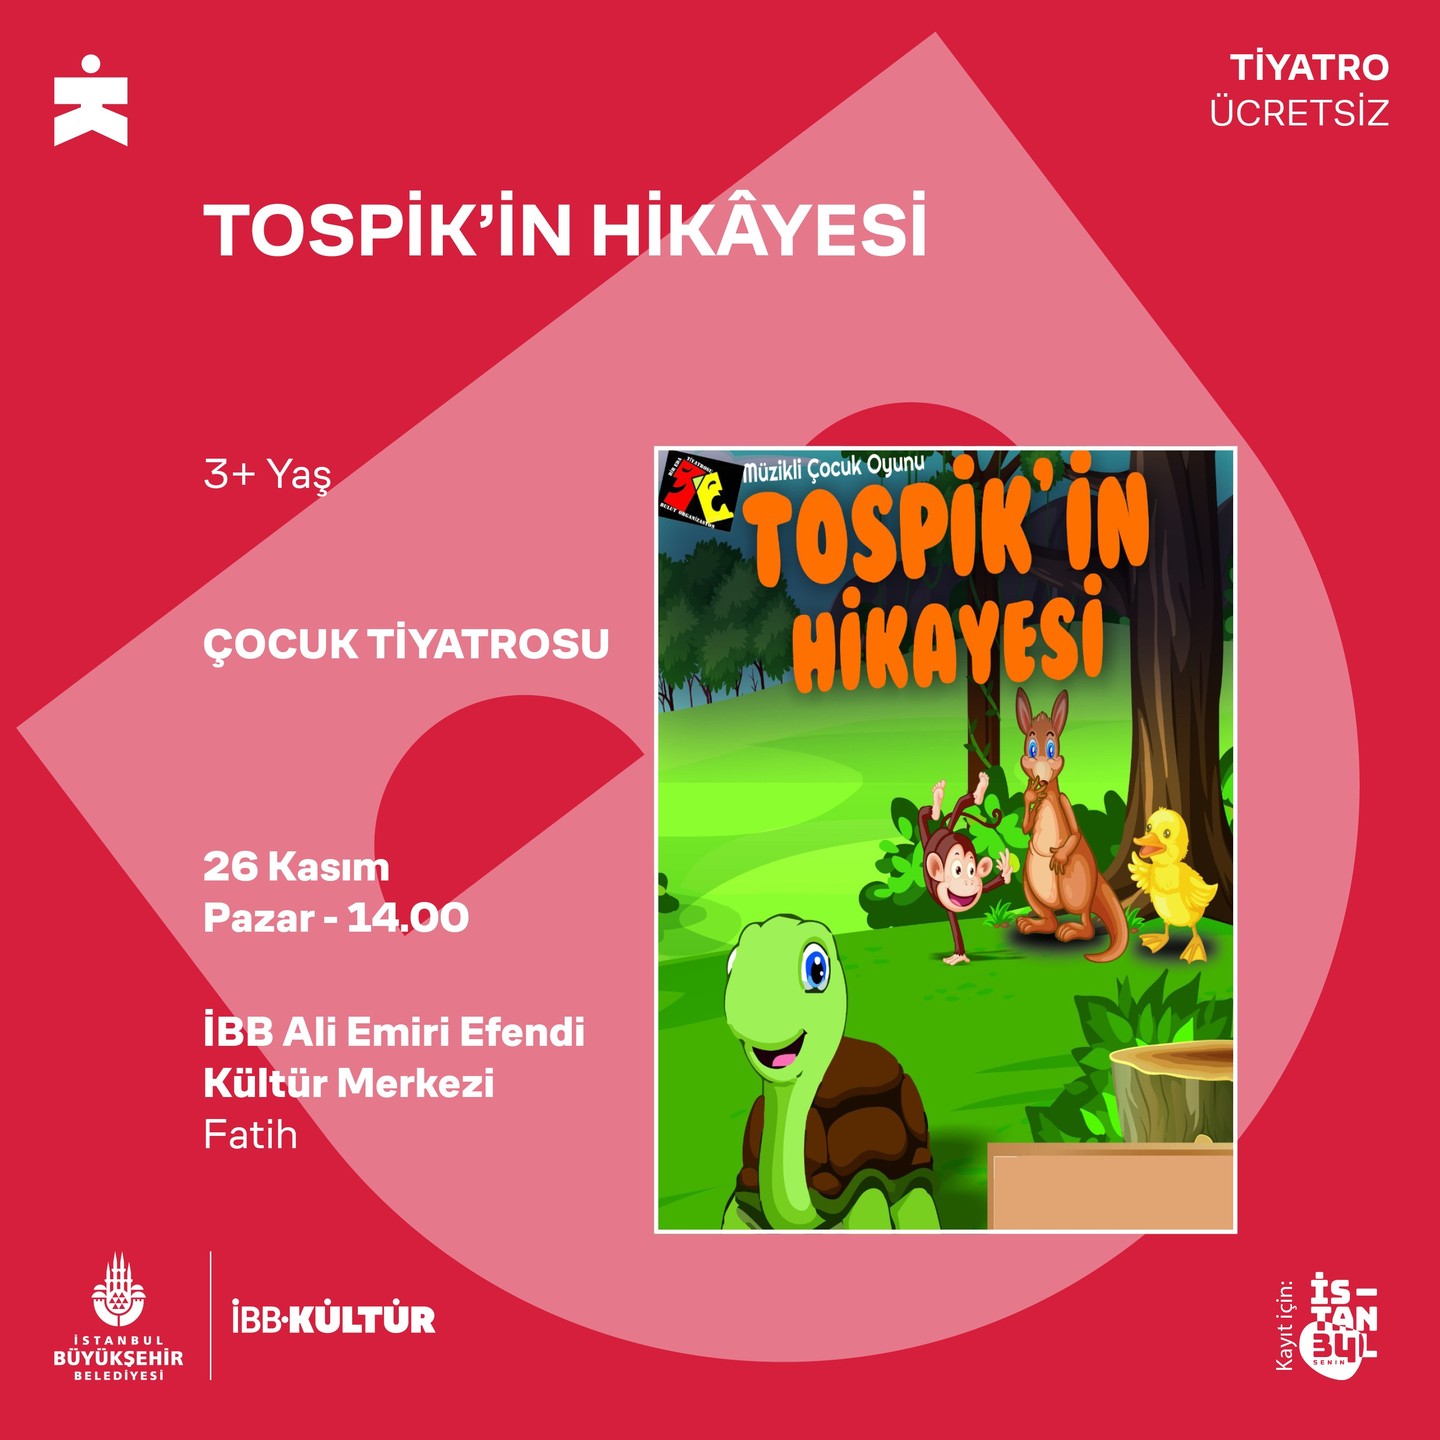 Tospik’in Hikayesi Tiyatro Ücretsiz